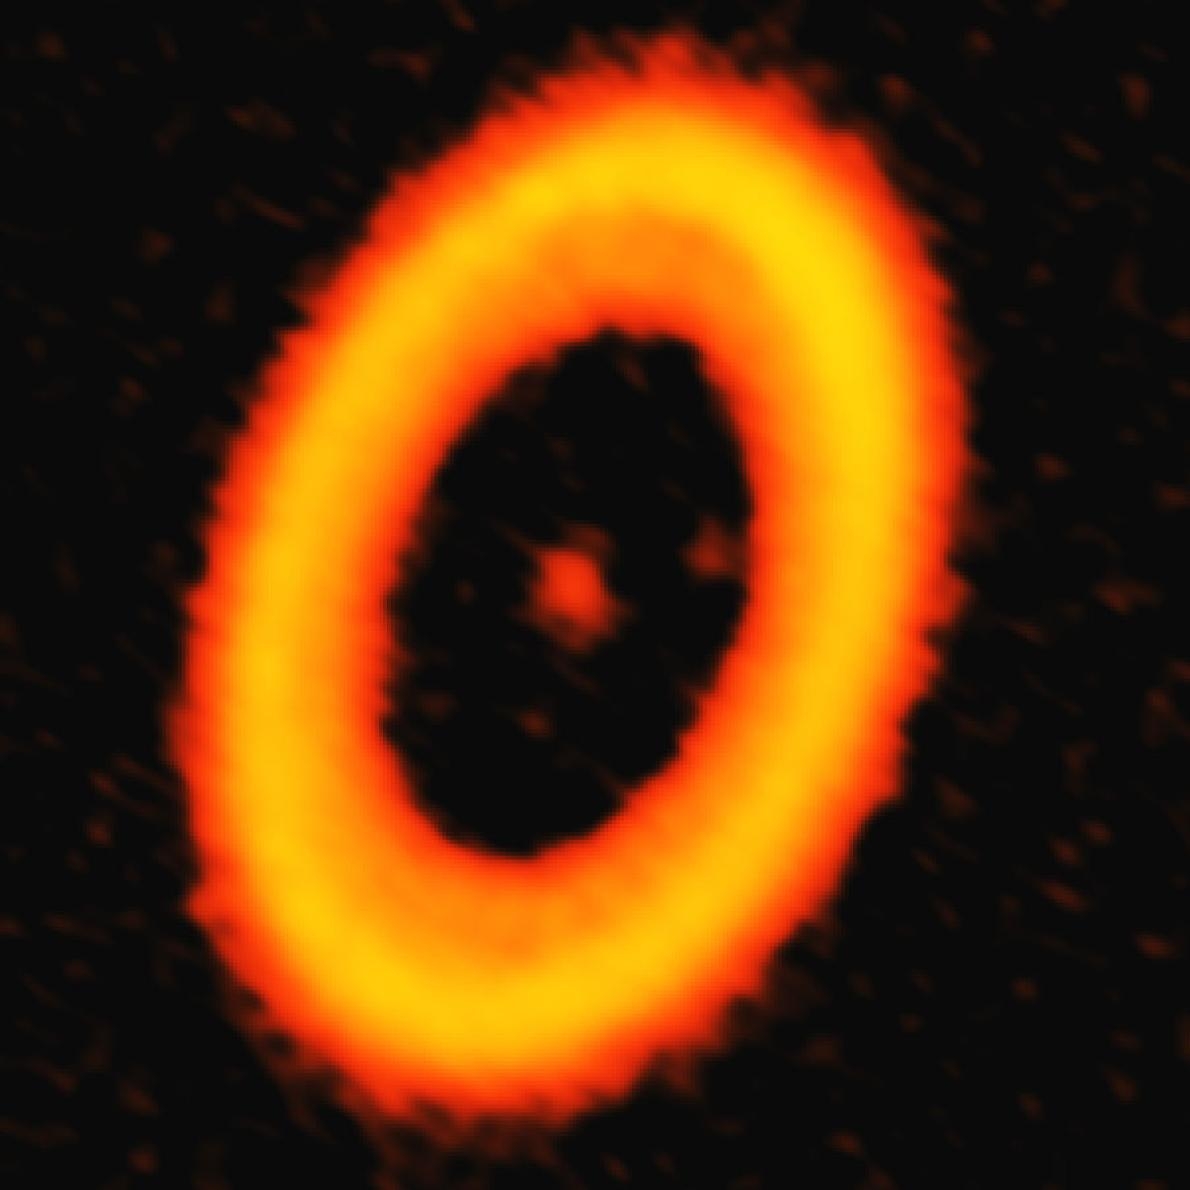 這張由亞他加馬大型毫米及次毫米波陣列（ALMA）所拍攝的影像，是PDS 70恆星系統周圍的塵埃圓盤。塵埃盤內有兩個黯淡的光斑，其中一個可能是我們首度目擊系外衛星即將形成的模樣。IMAGE BY A. ISELLA, ALMA (ESO/NAOJ/NRAO)